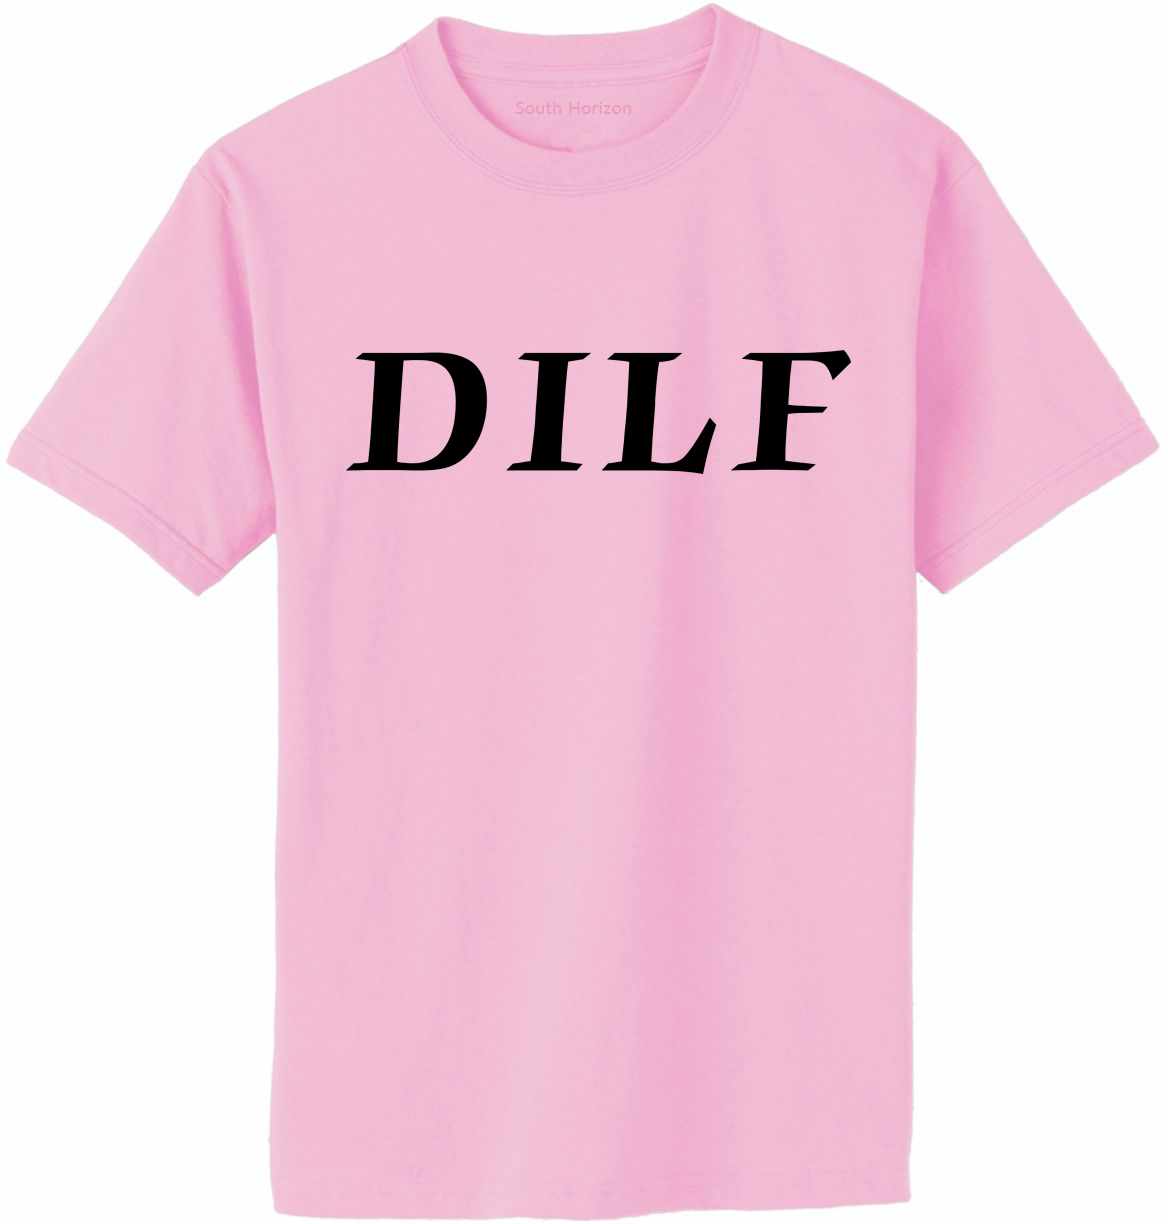 DILF on Adult T-Shirt (#476-1)